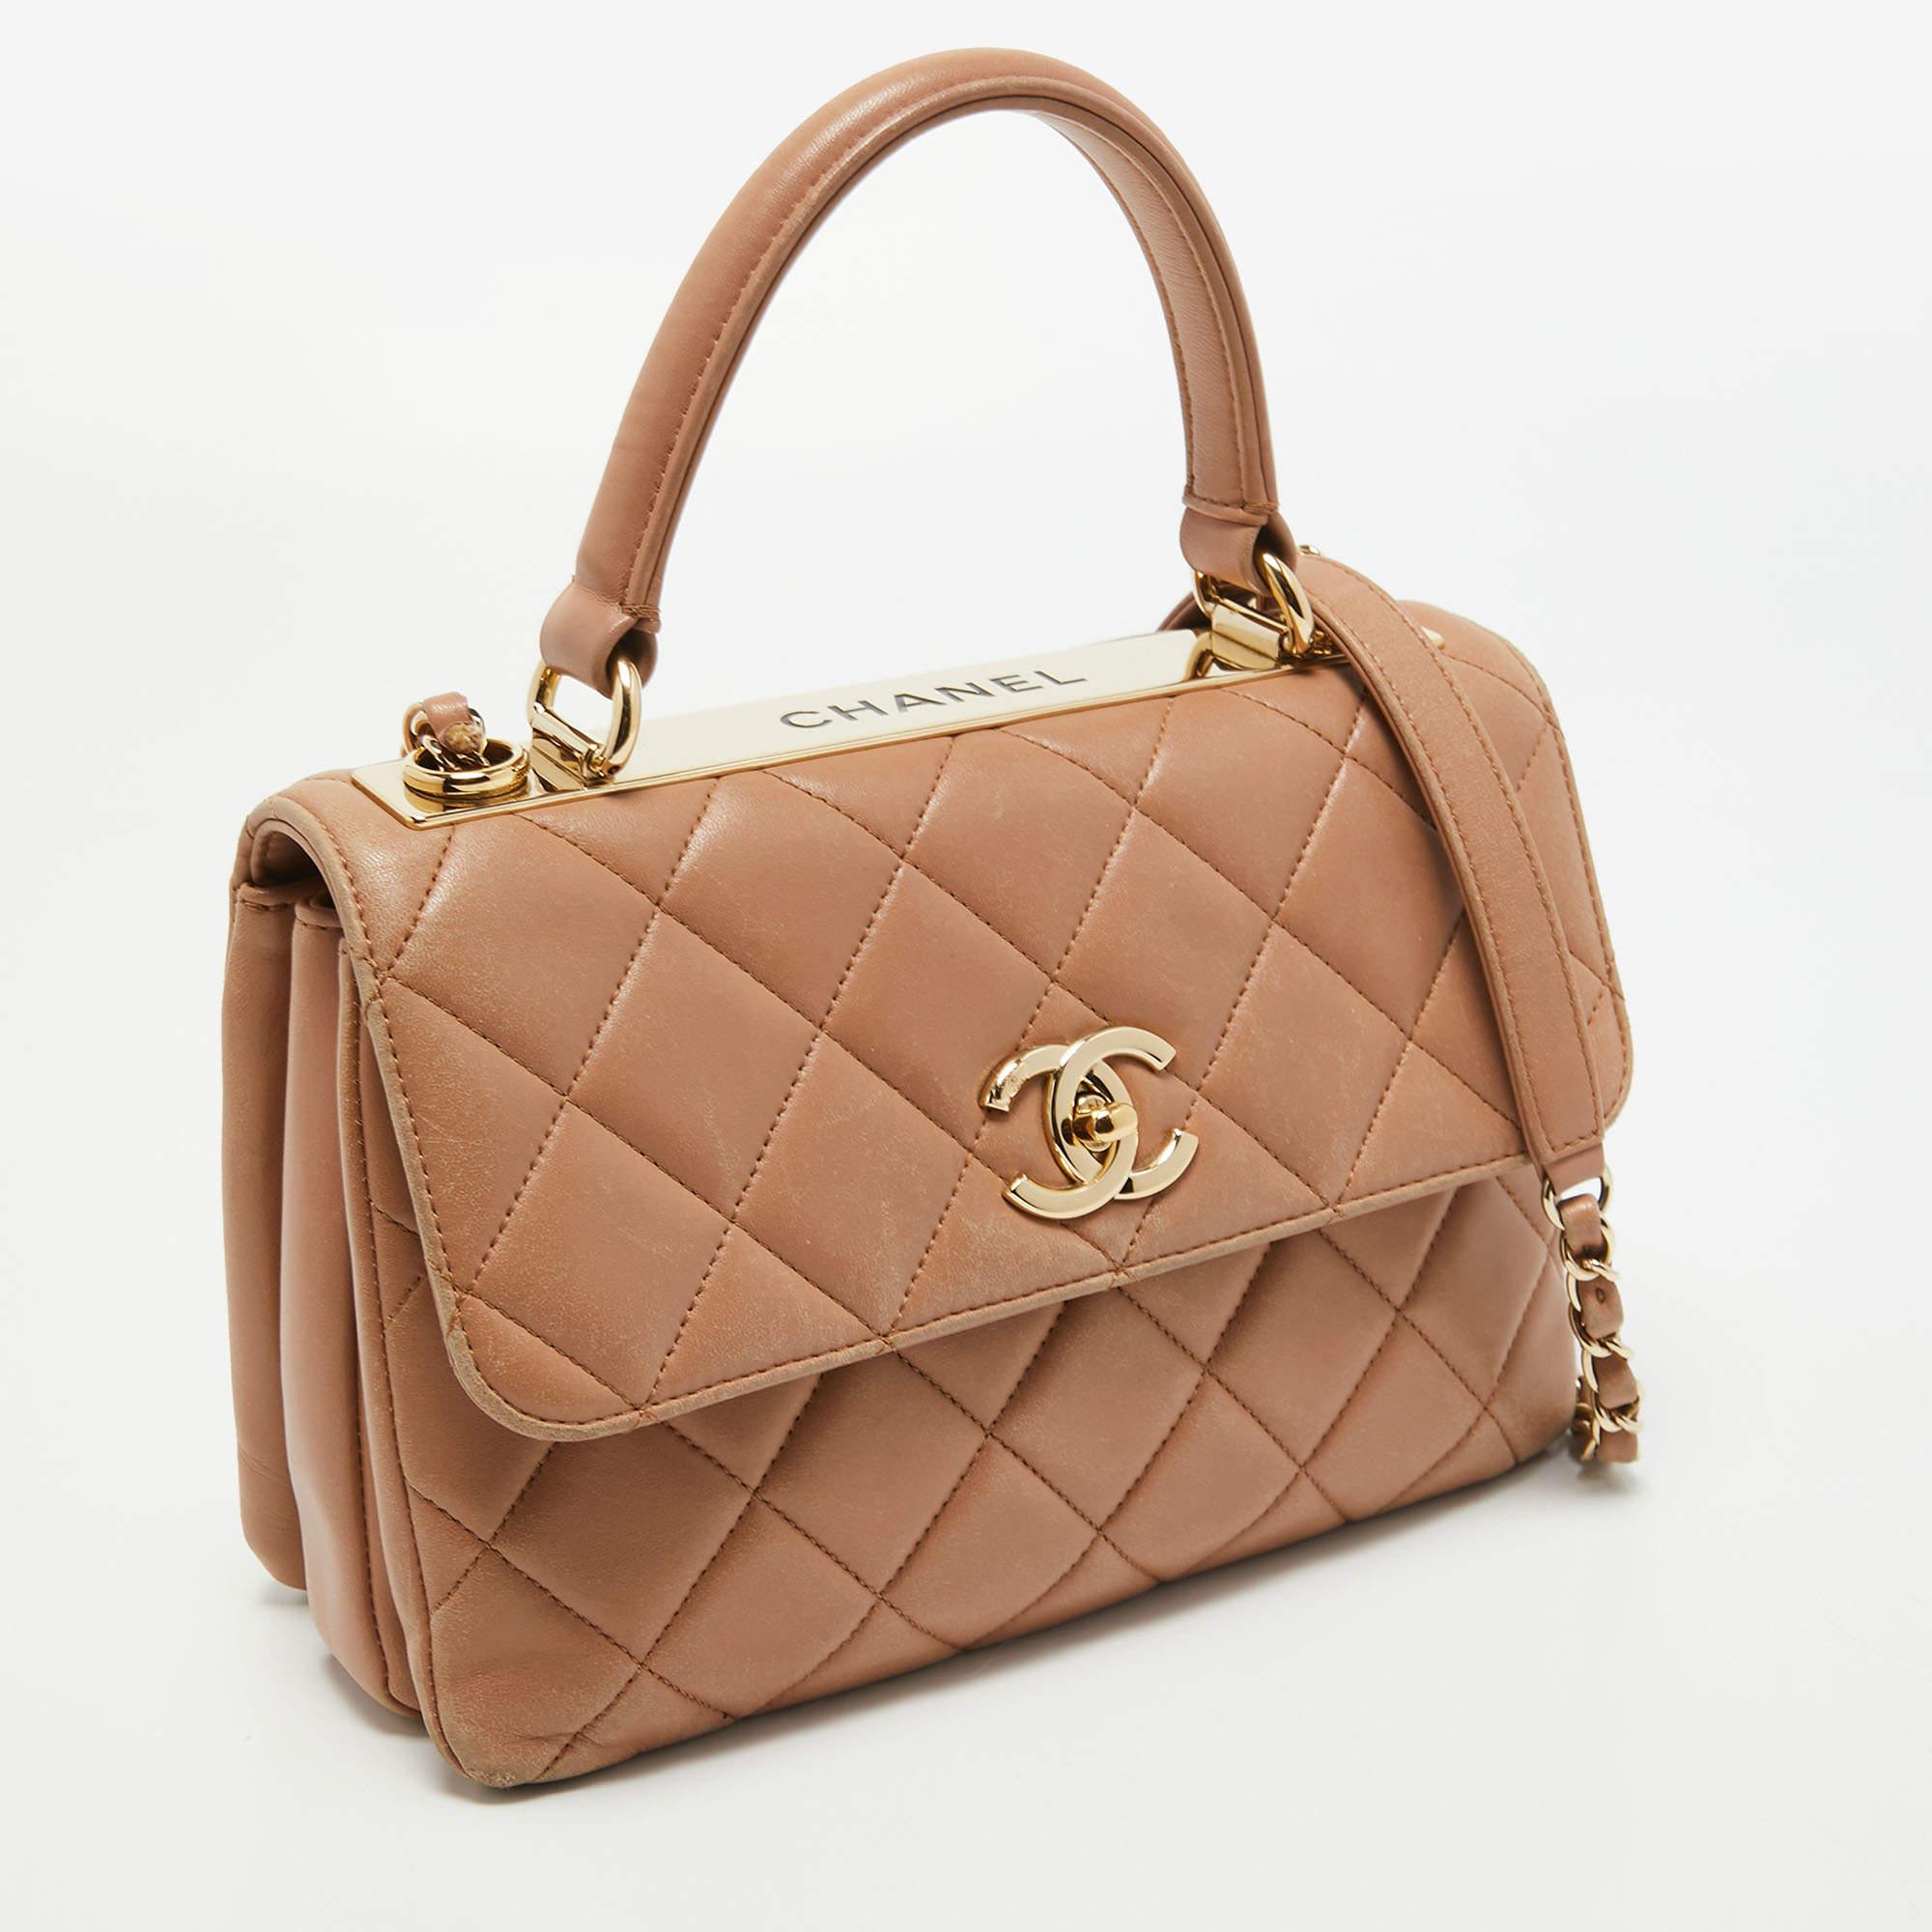 Diese trendige CC Flap Tasche aus dem Hause Chanel wird Ihrer Garderobe sicherlich einen Hauch von Luxus verleihen. Die mit dem kultigen CC-Schloss auf der Vorderseite verzierte Tasche ist aus beigefarbenem, gestepptem Leder gefertigt und hat eine